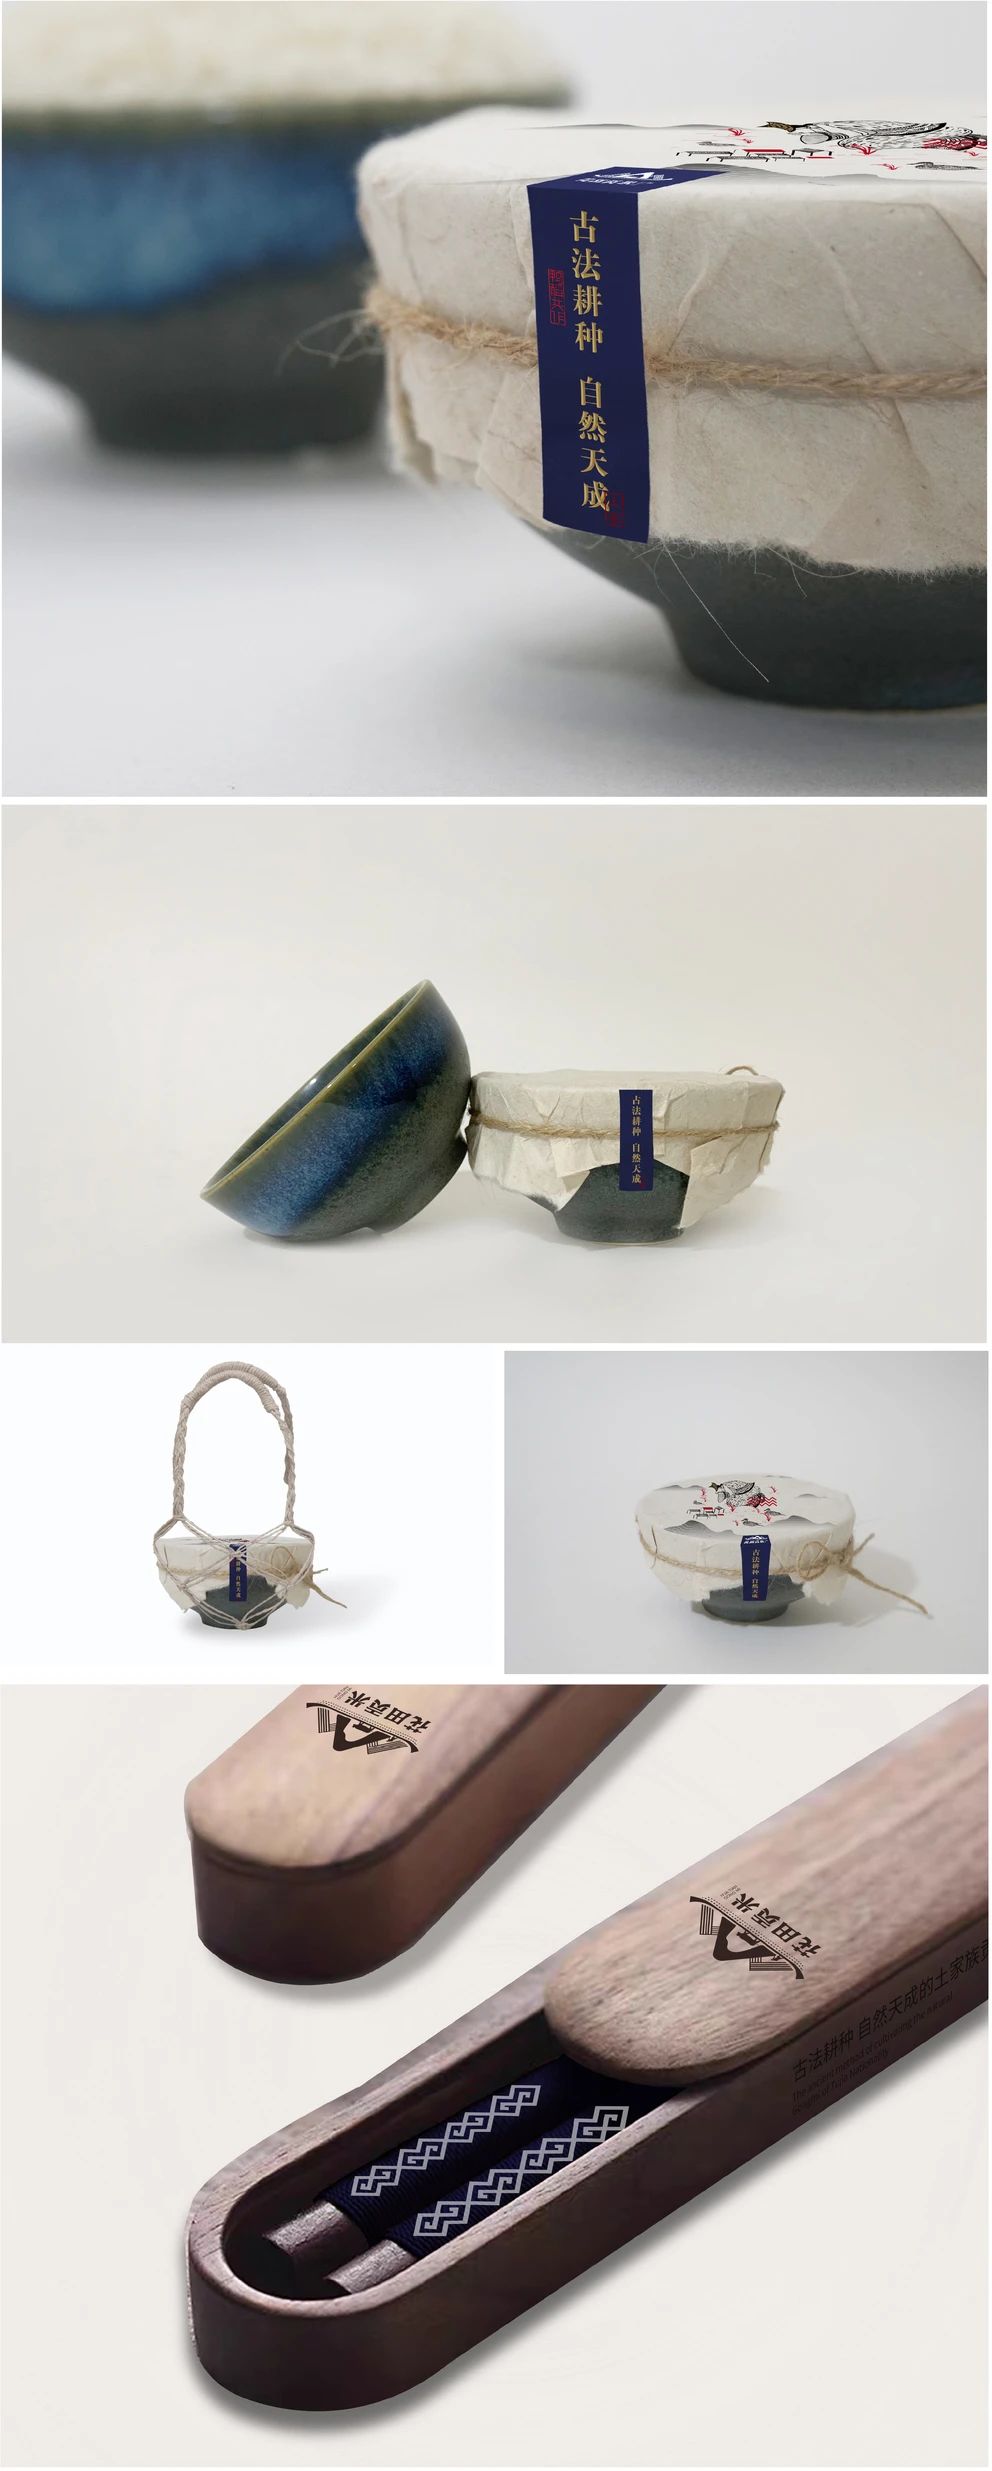 花田贡米品牌包装设计创意